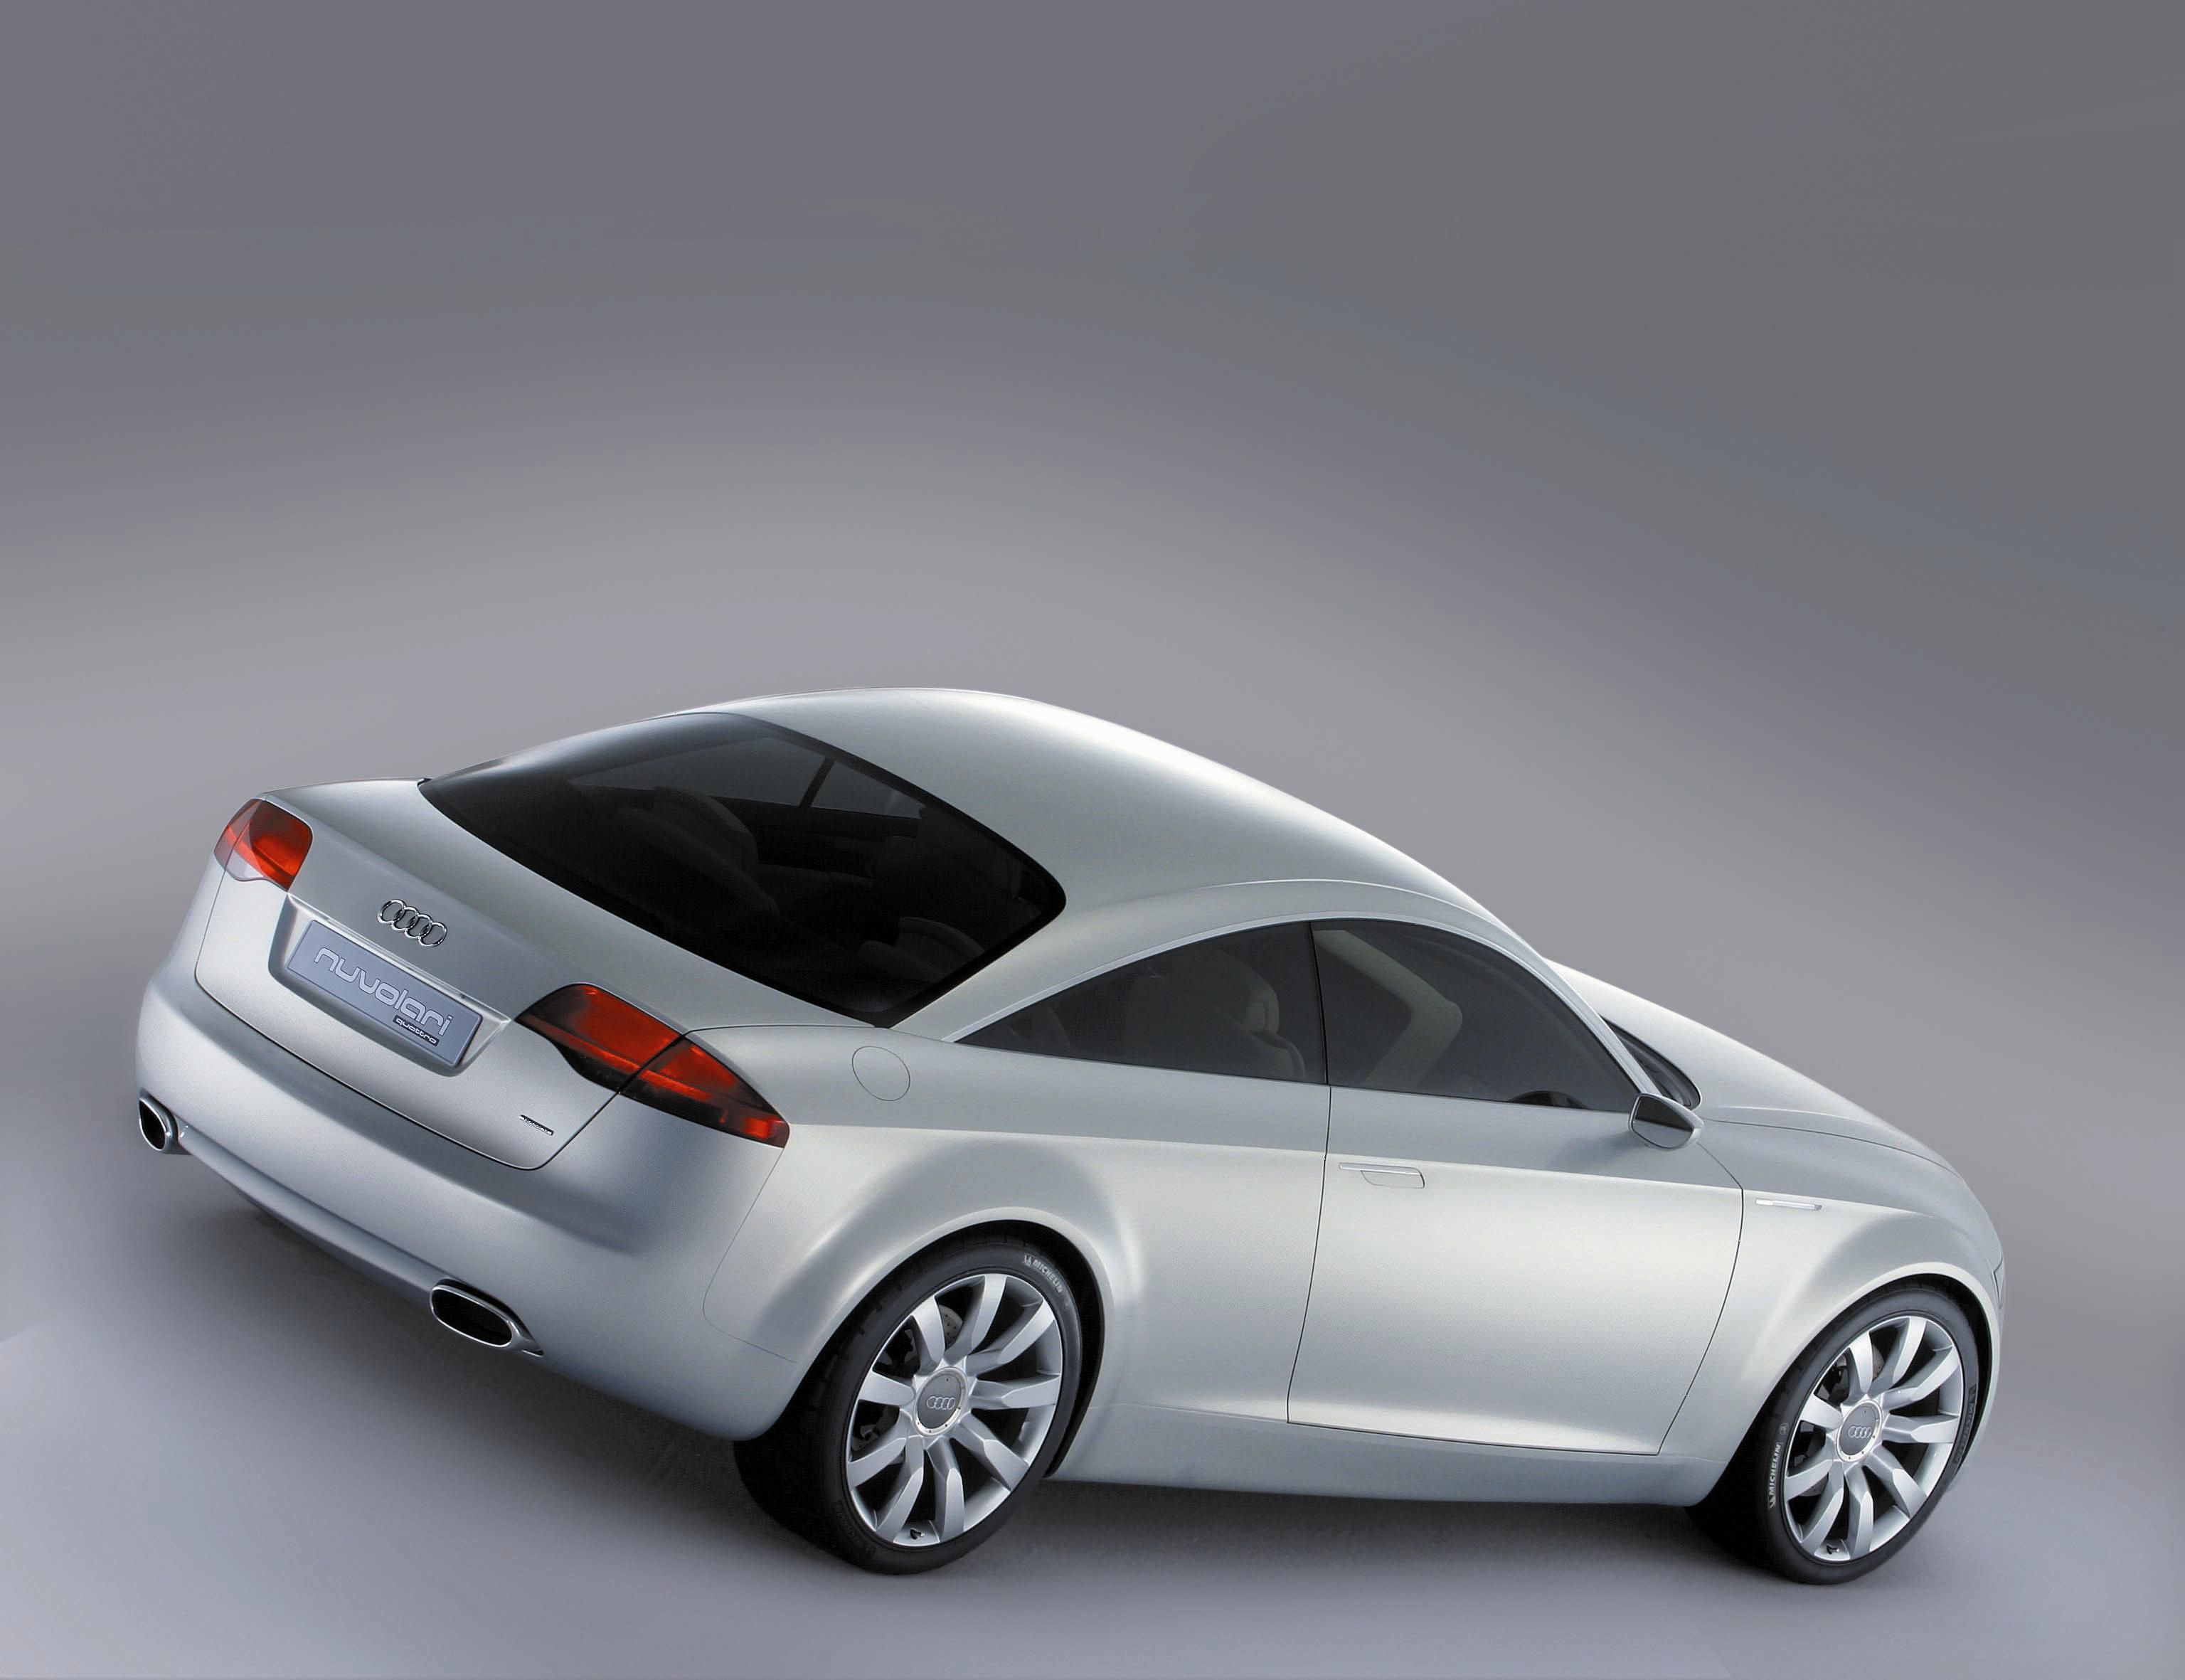 2003 Audi Nuvolari Concept